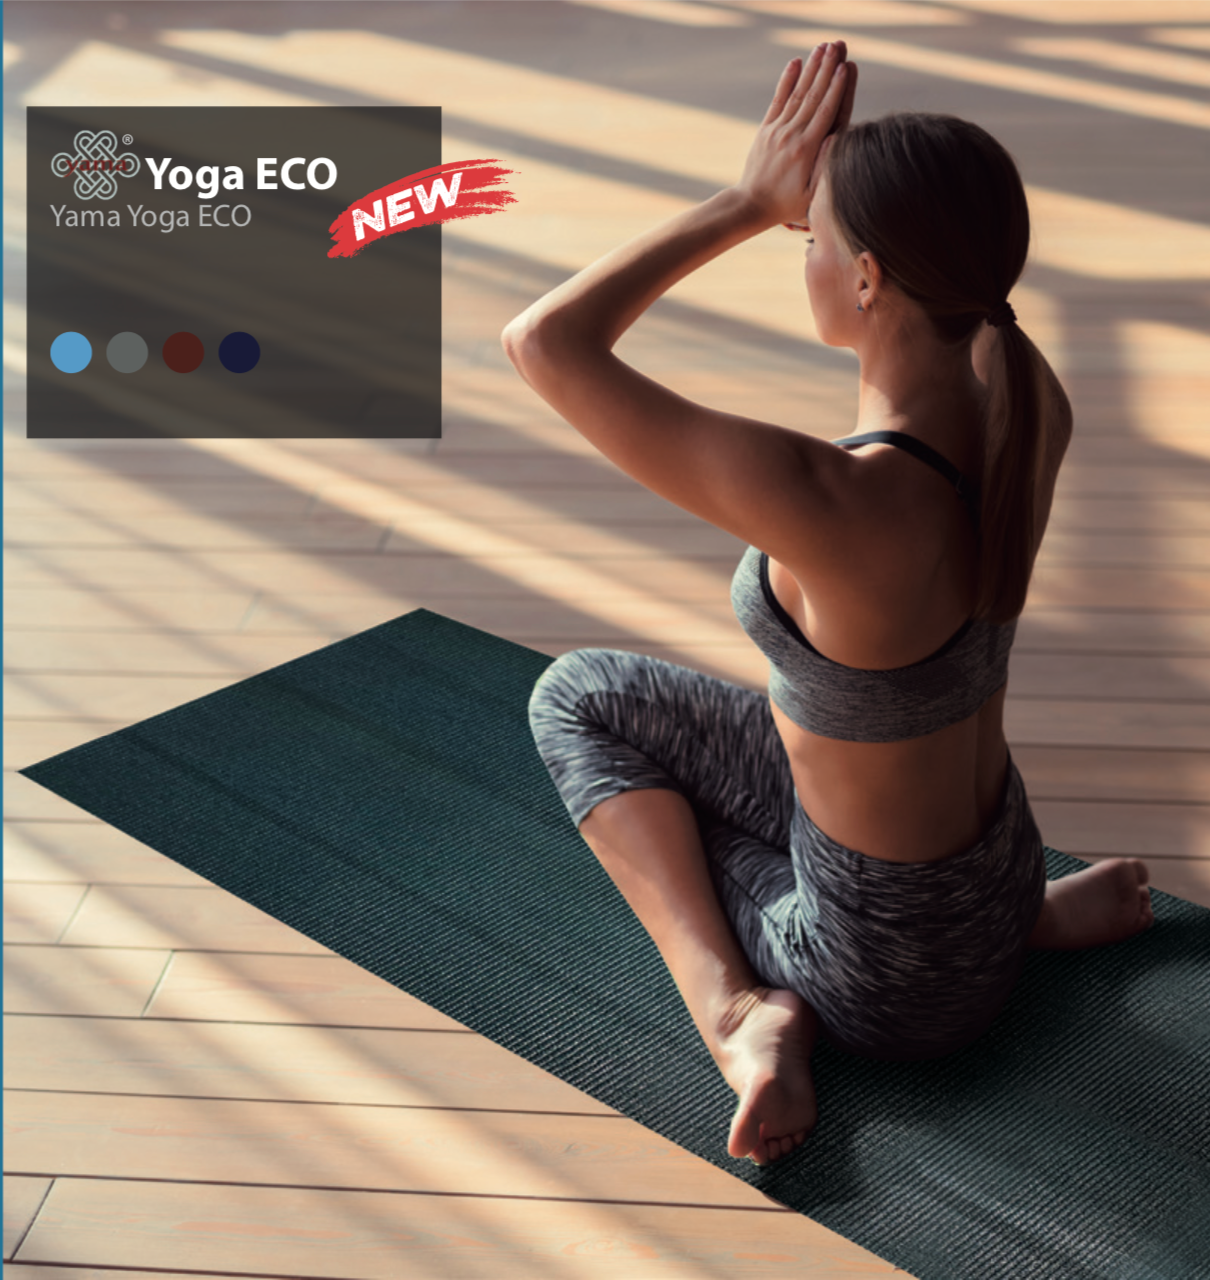 Yoga ECO [variatn_title] - yogioshop.com